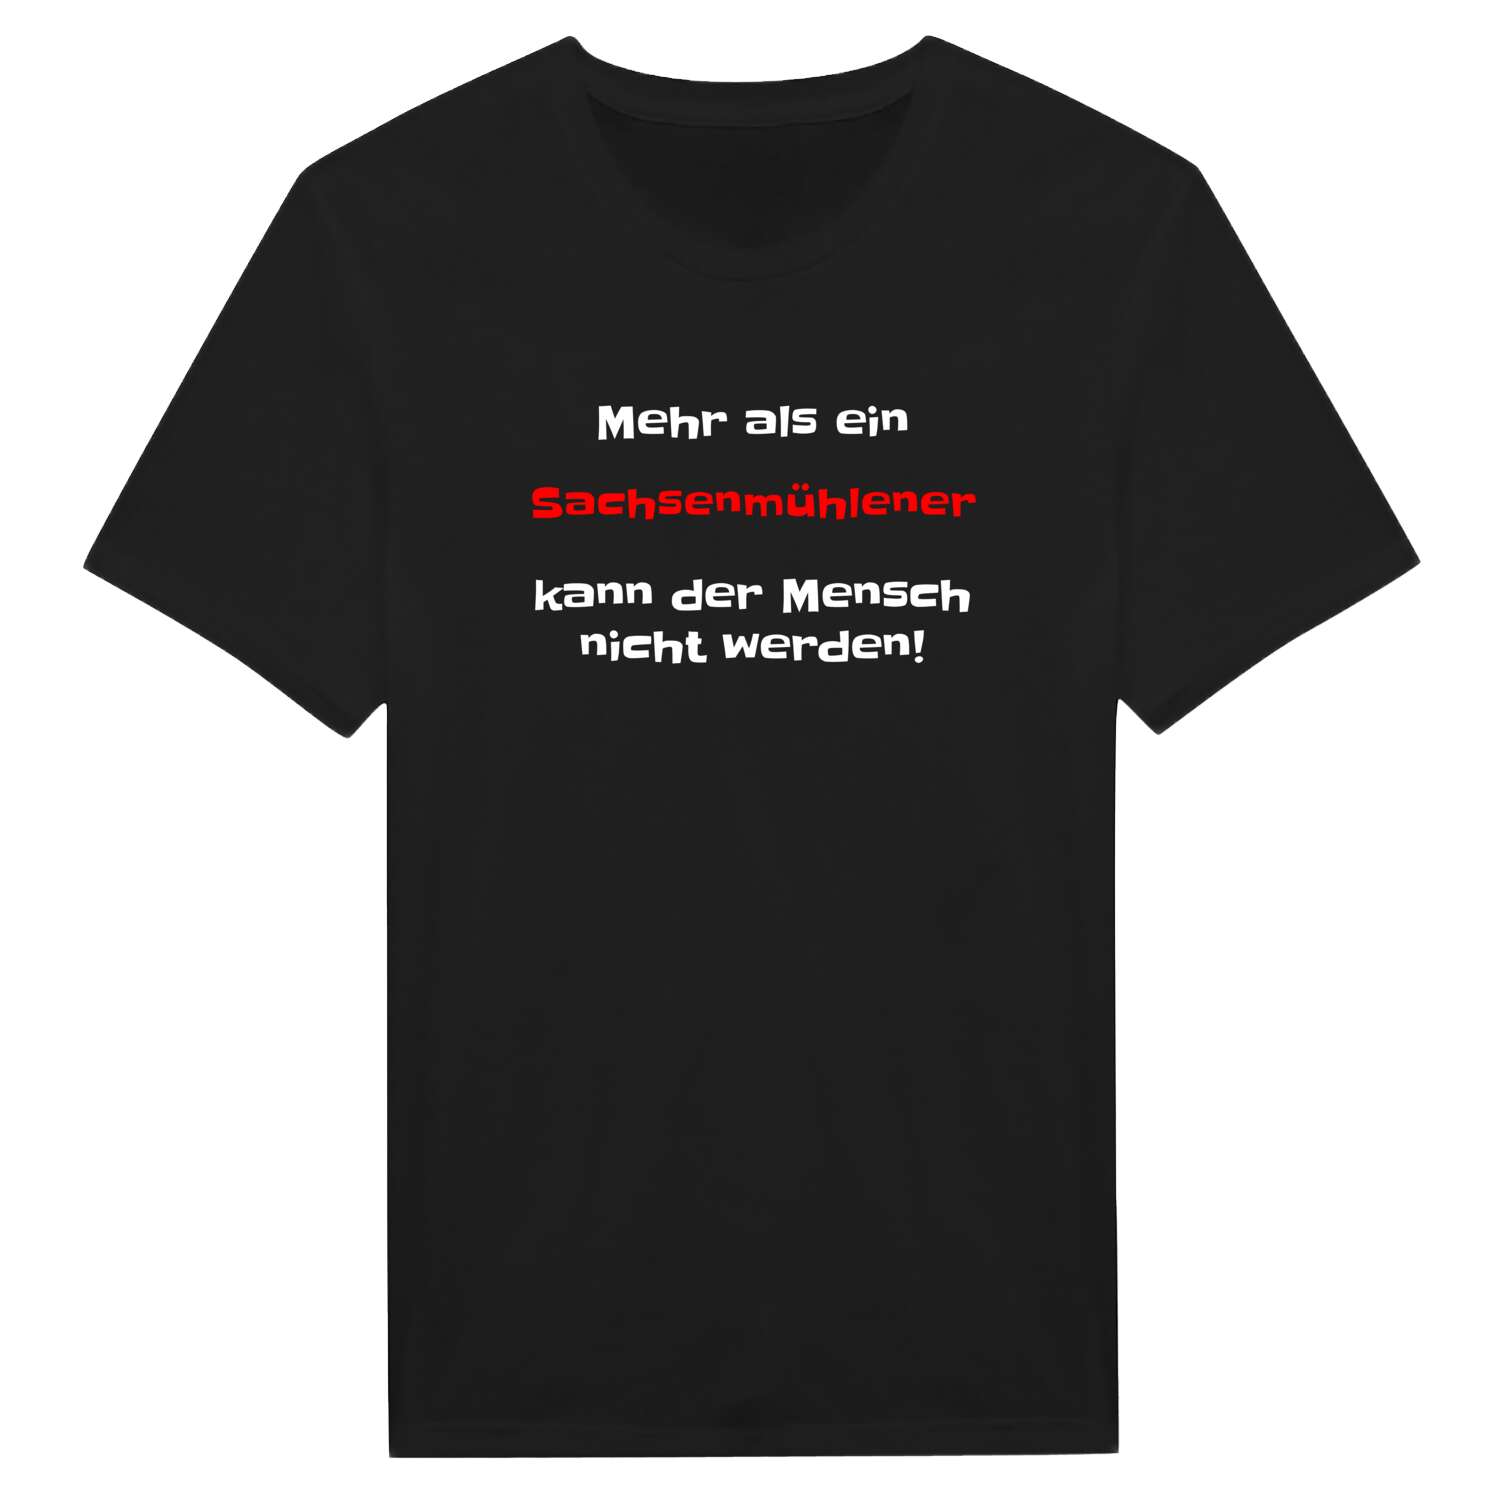 Sachsenmühle T-Shirt »Mehr als ein«